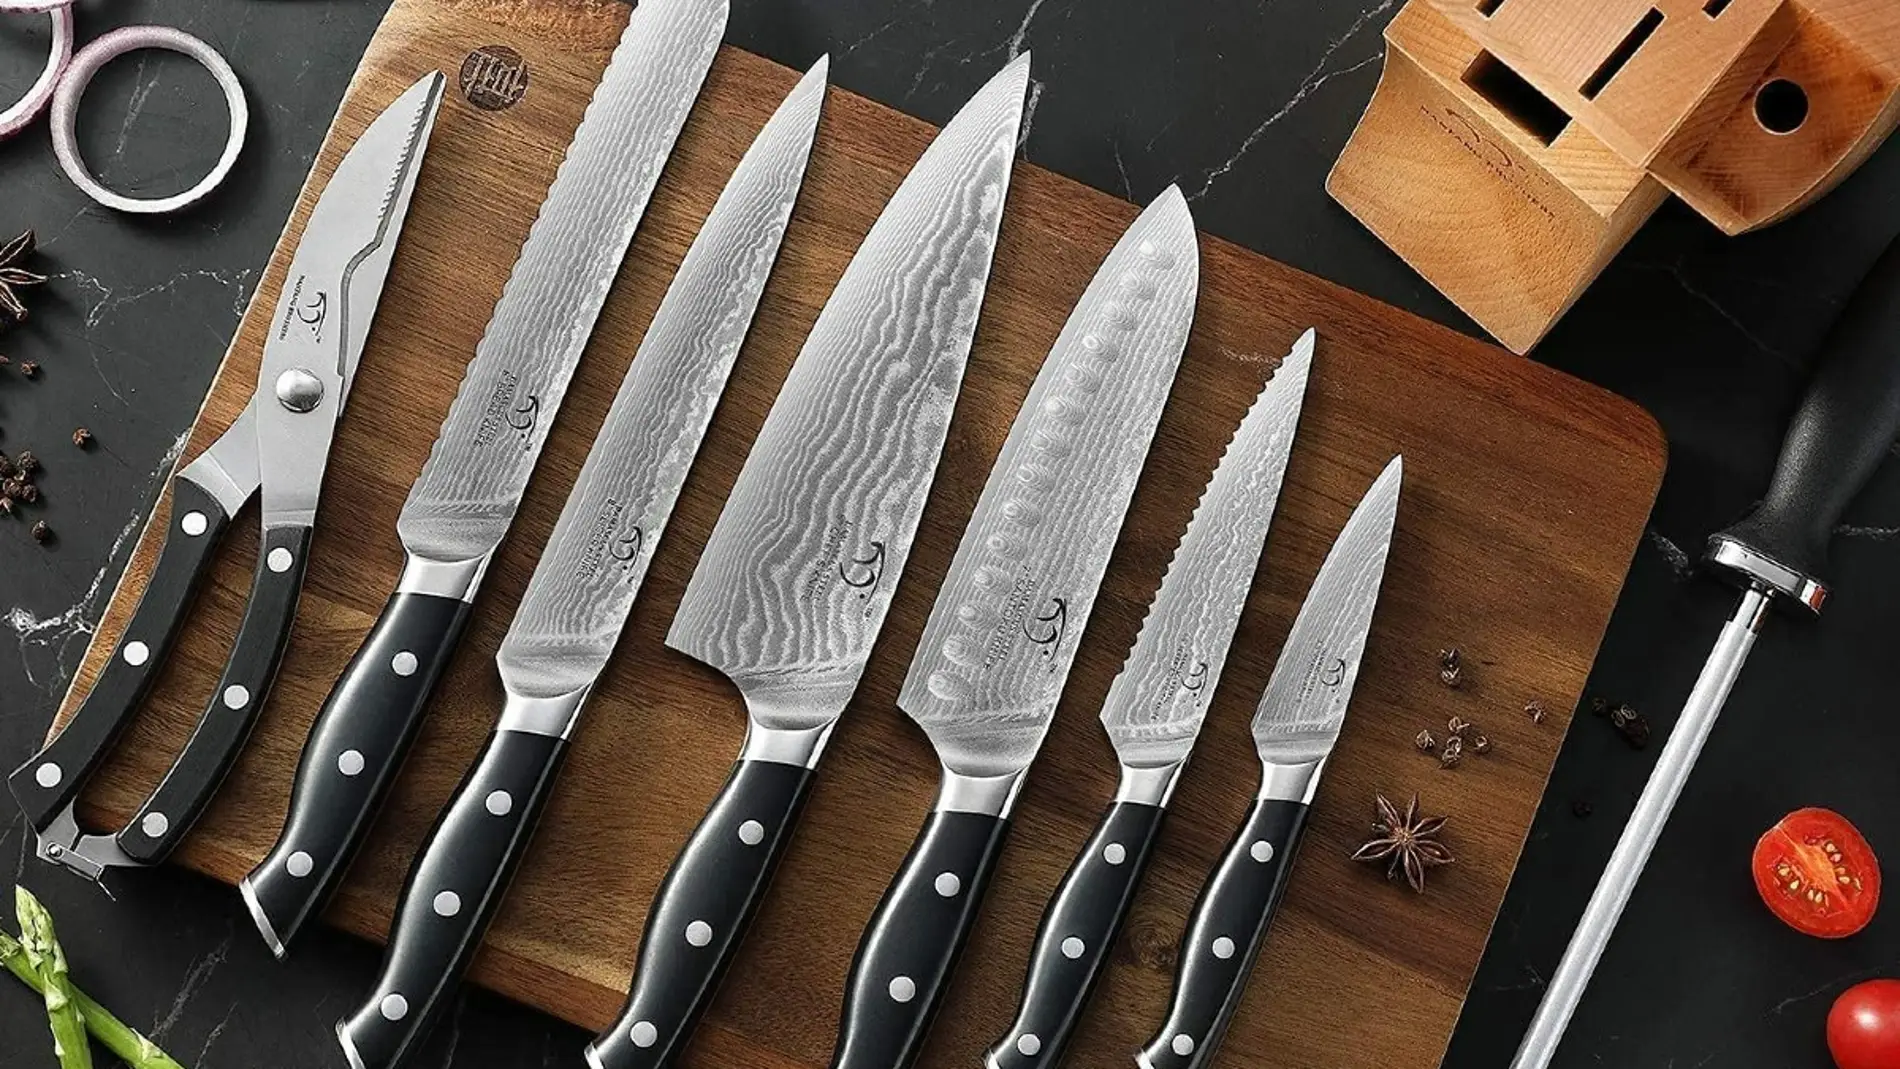 Set De Cuchillos De Cocina Para Chef Profesional Con